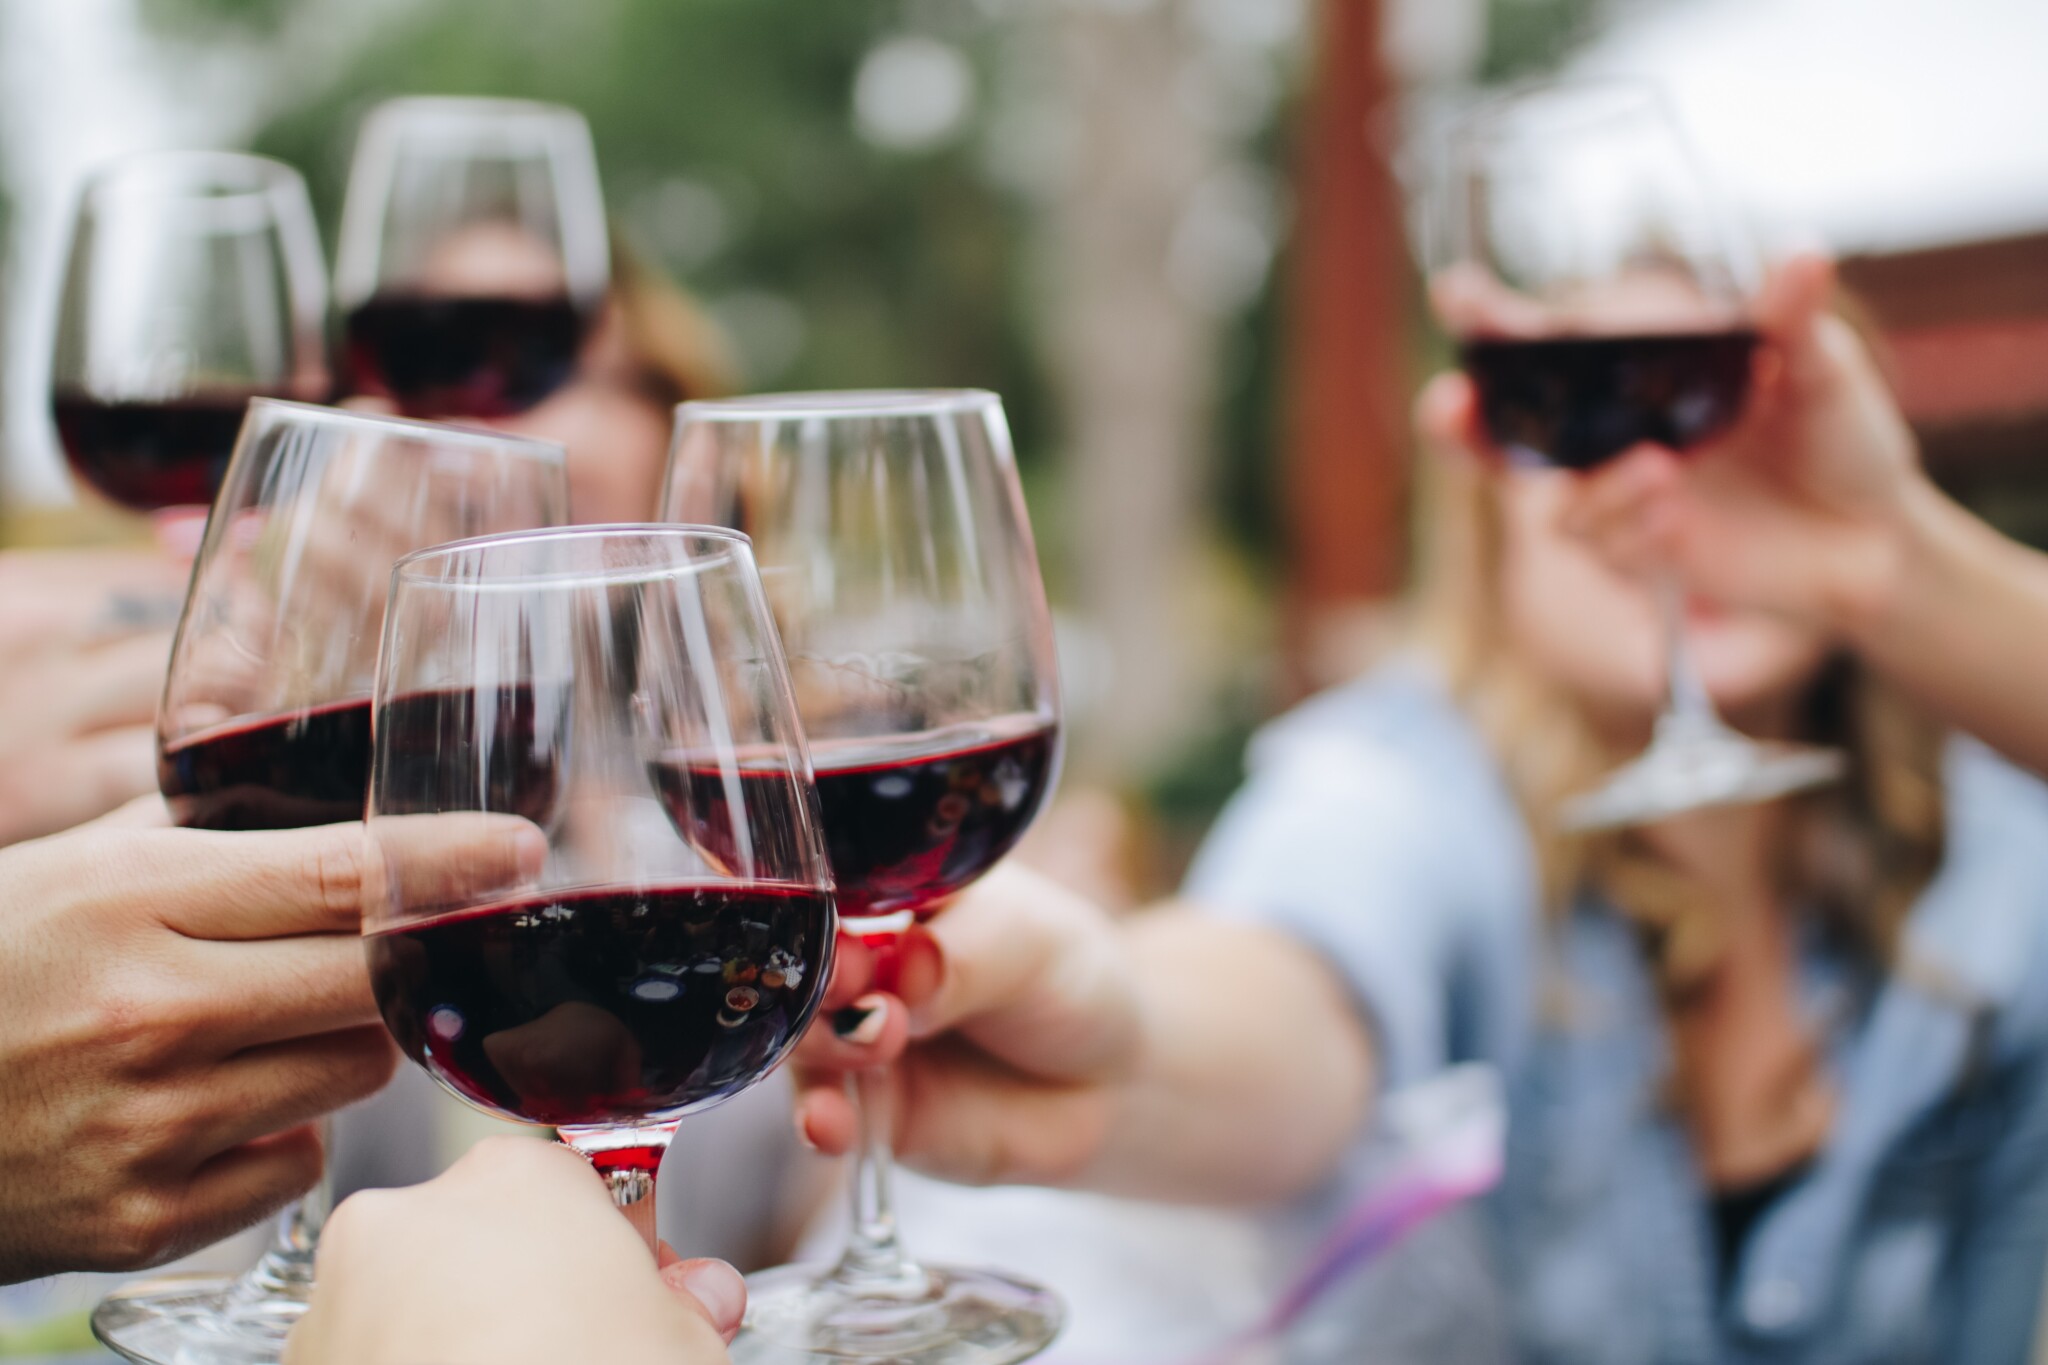 Vinařský fond vybral letošní svatomartinská vína. Na trhu jich bude rekordních 2,3 milionu kusů